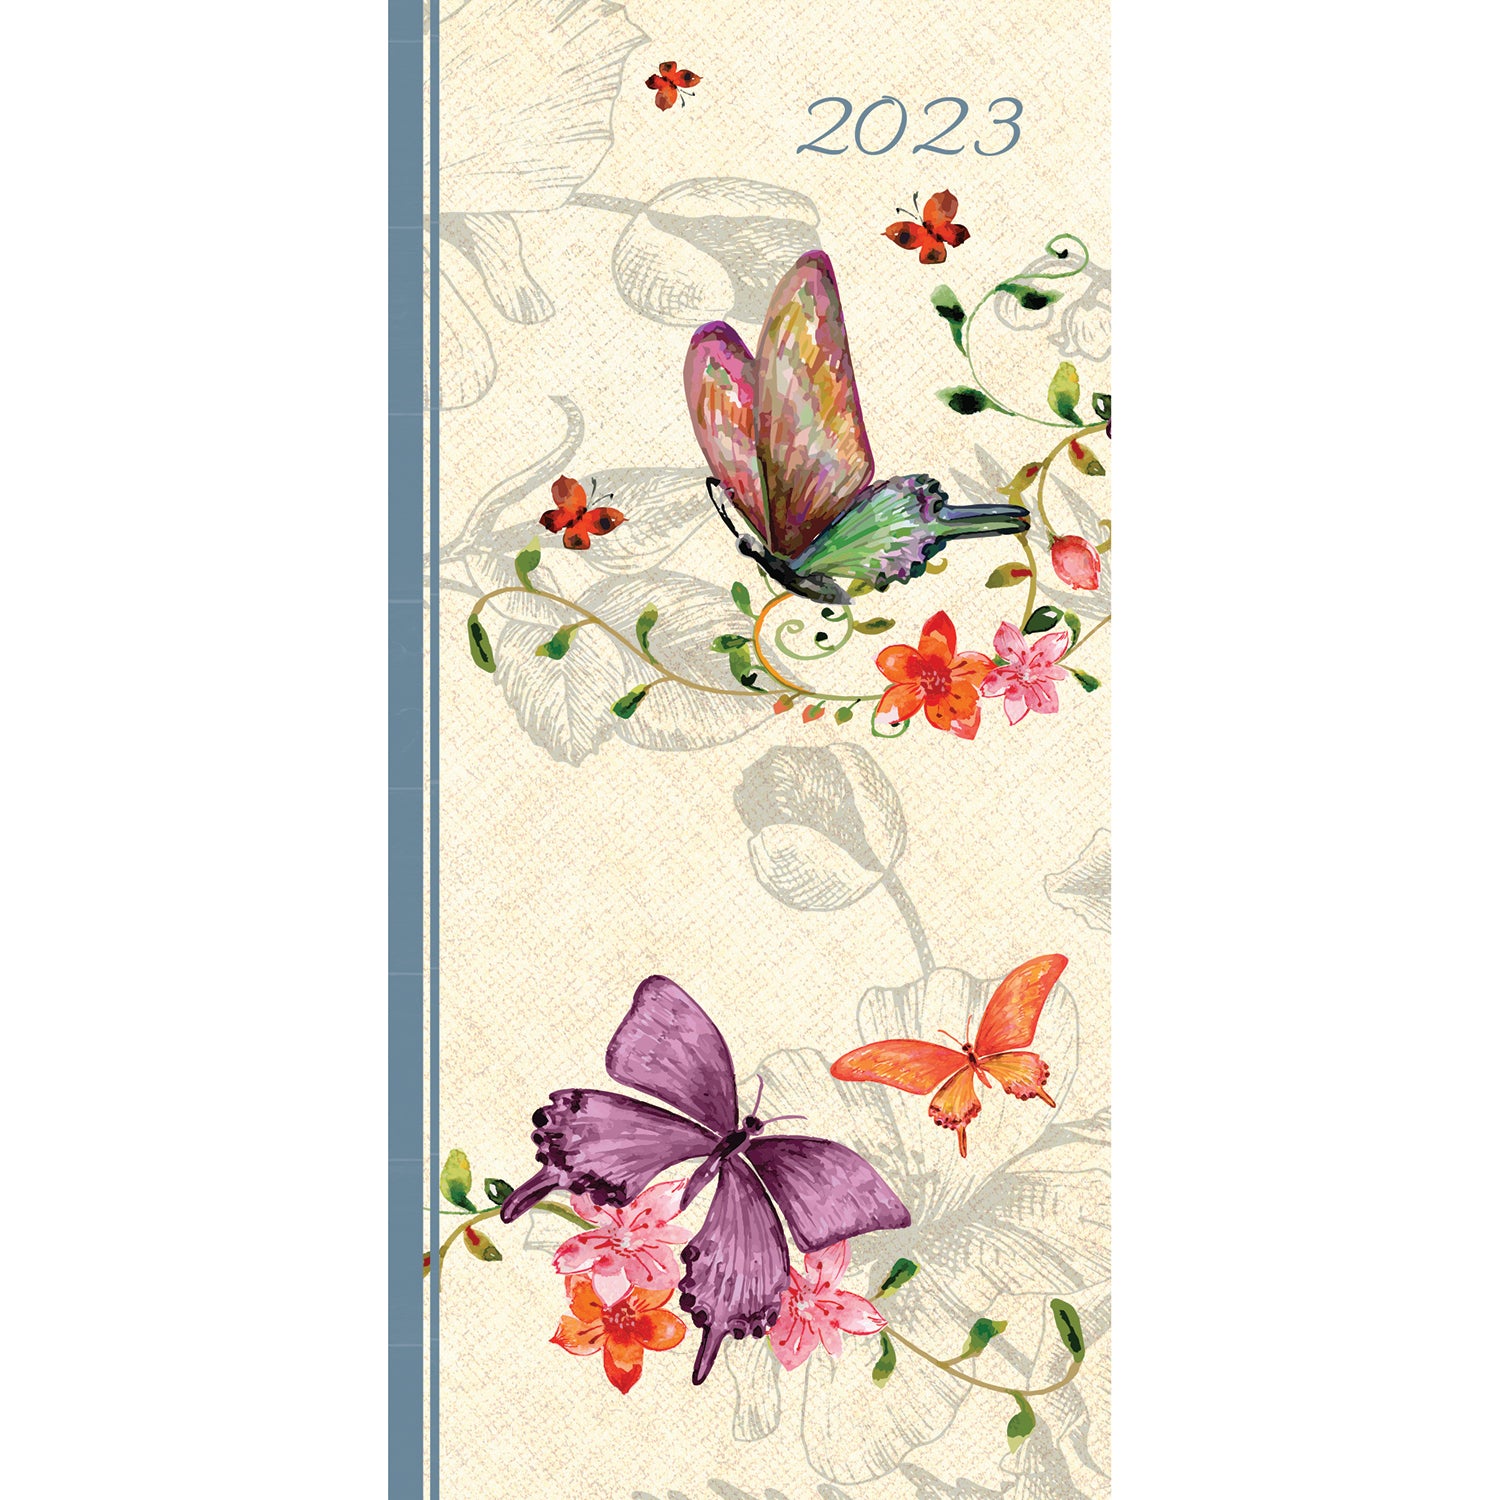 Belle Faune 2023 Flexi Pocket Diary Premium Planner Christmas Xmas New Year Gift - Zmart Australia